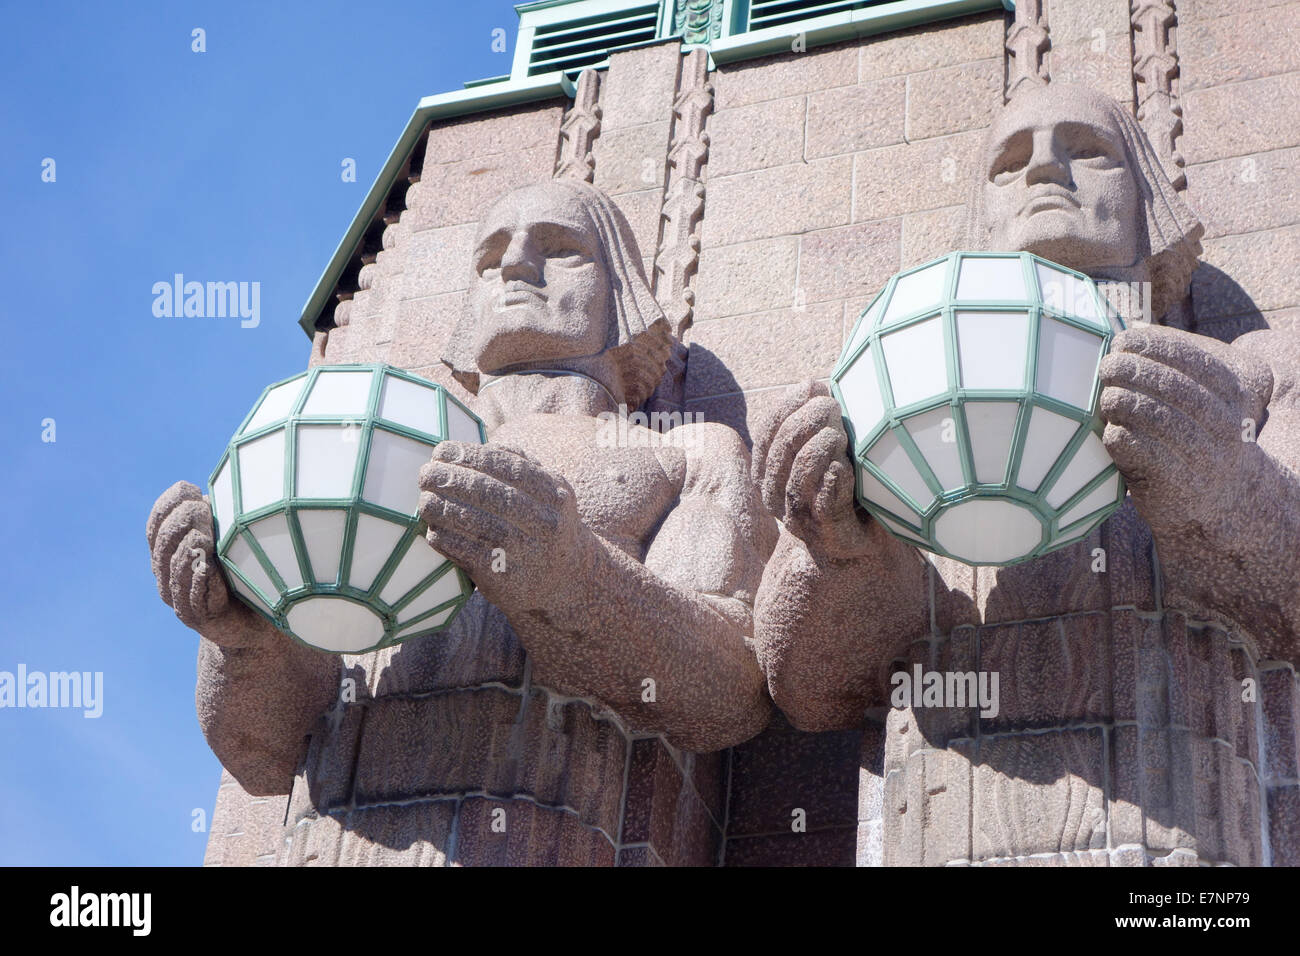 La Finlande, Helsinki : deux statues Art Déco lampes sphériques qui accueillent des visiteurs à la gare centrale d'Helsinki. Banque D'Images